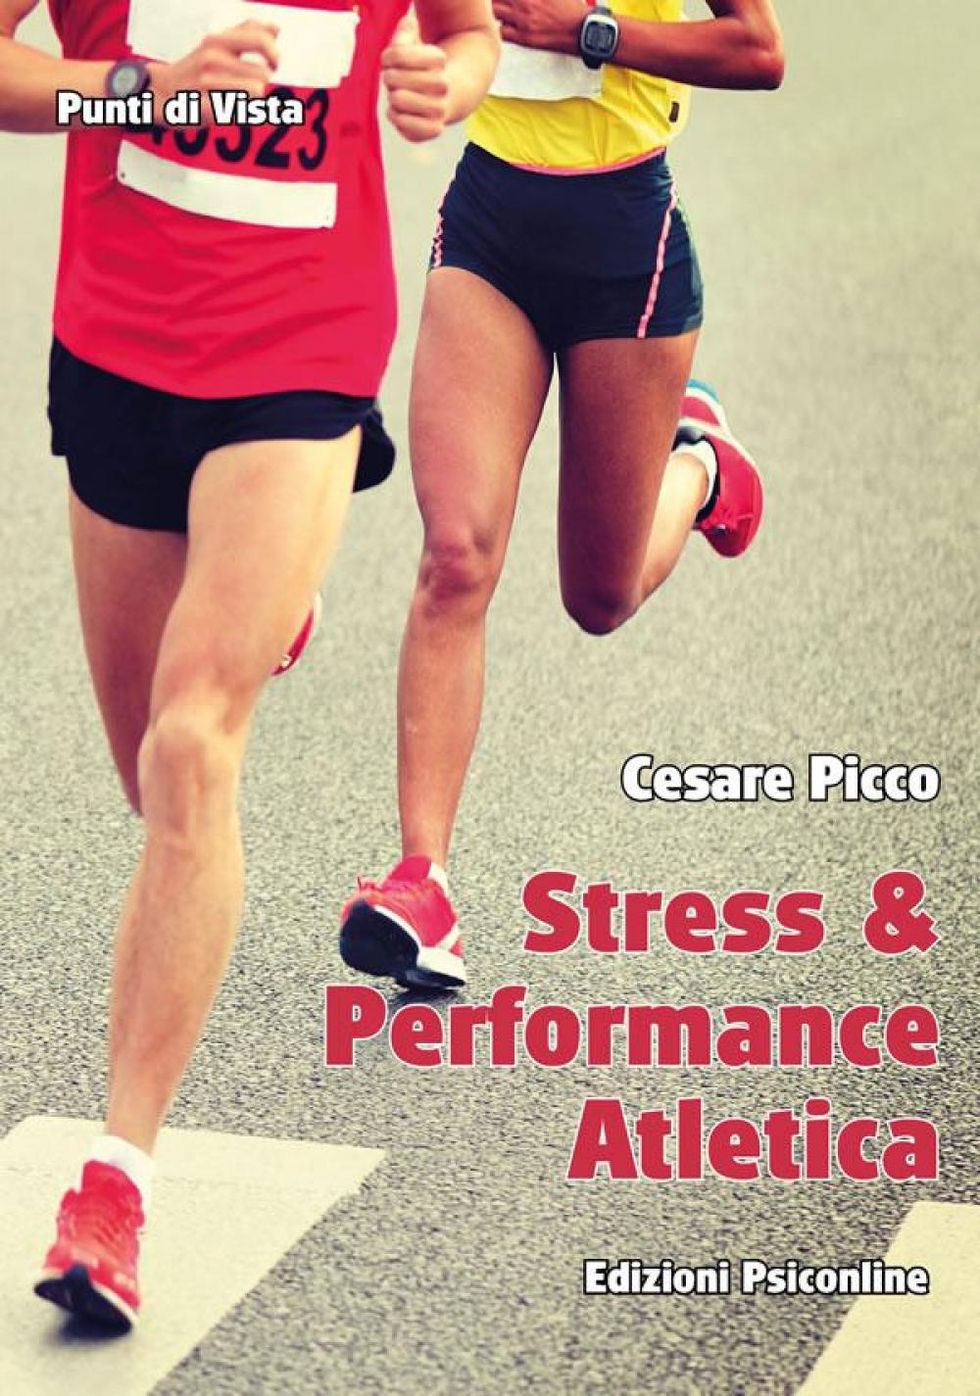 La cover di "Stress & Performance Atletica” di Cesare Picco, edito da Edizioni Psiconline